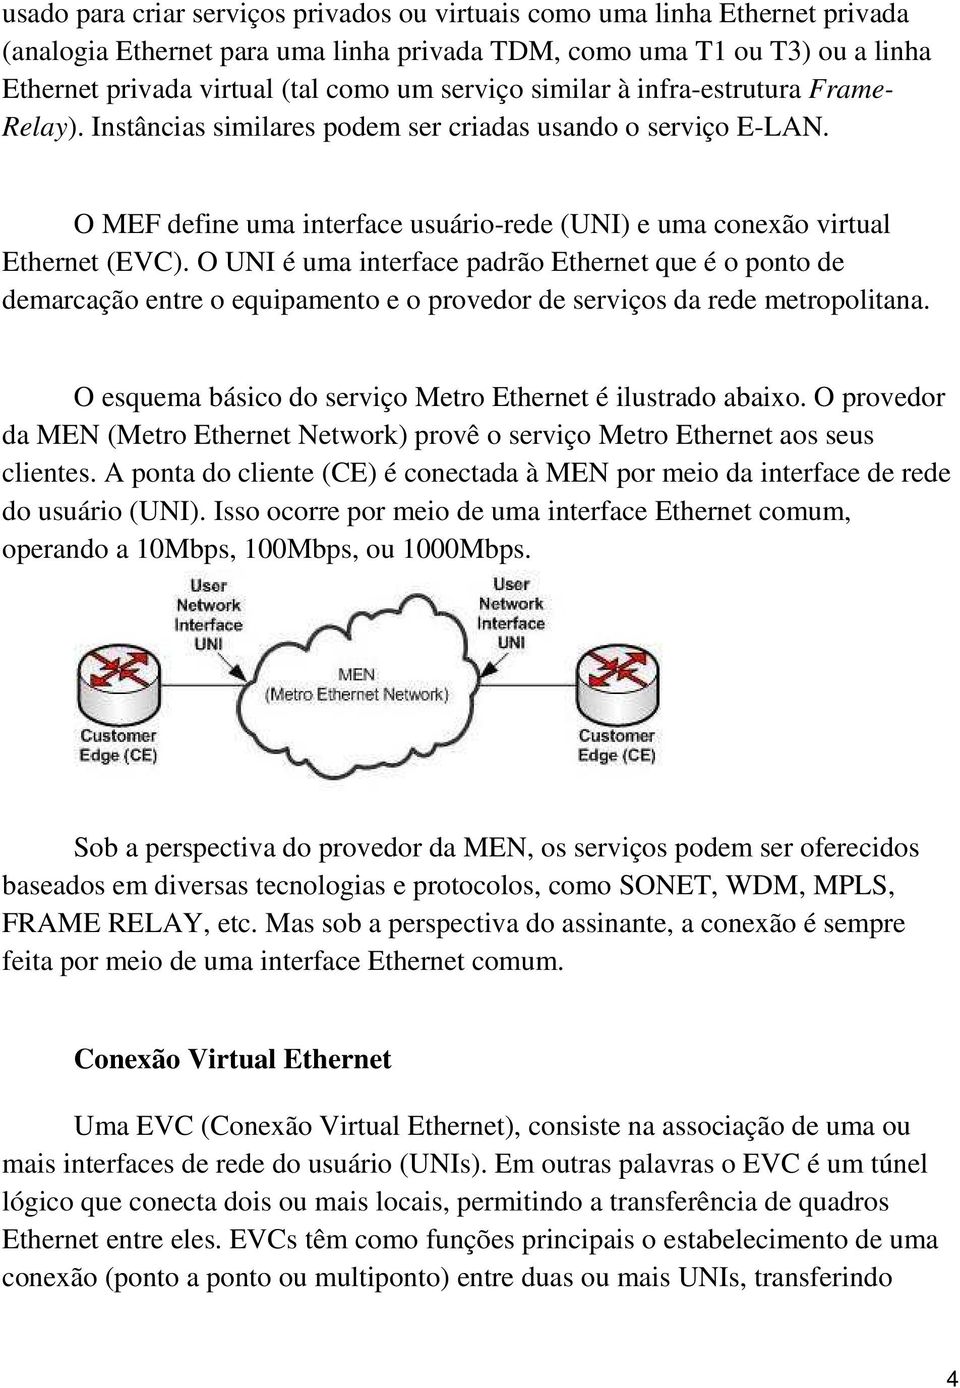 O UNI é uma interface padrão Ethernet que é o ponto de demarcação entre o equipamento e o provedor de serviços da rede metropolitana. O esquema básico do serviço Metro Ethernet é ilustrado abaixo.